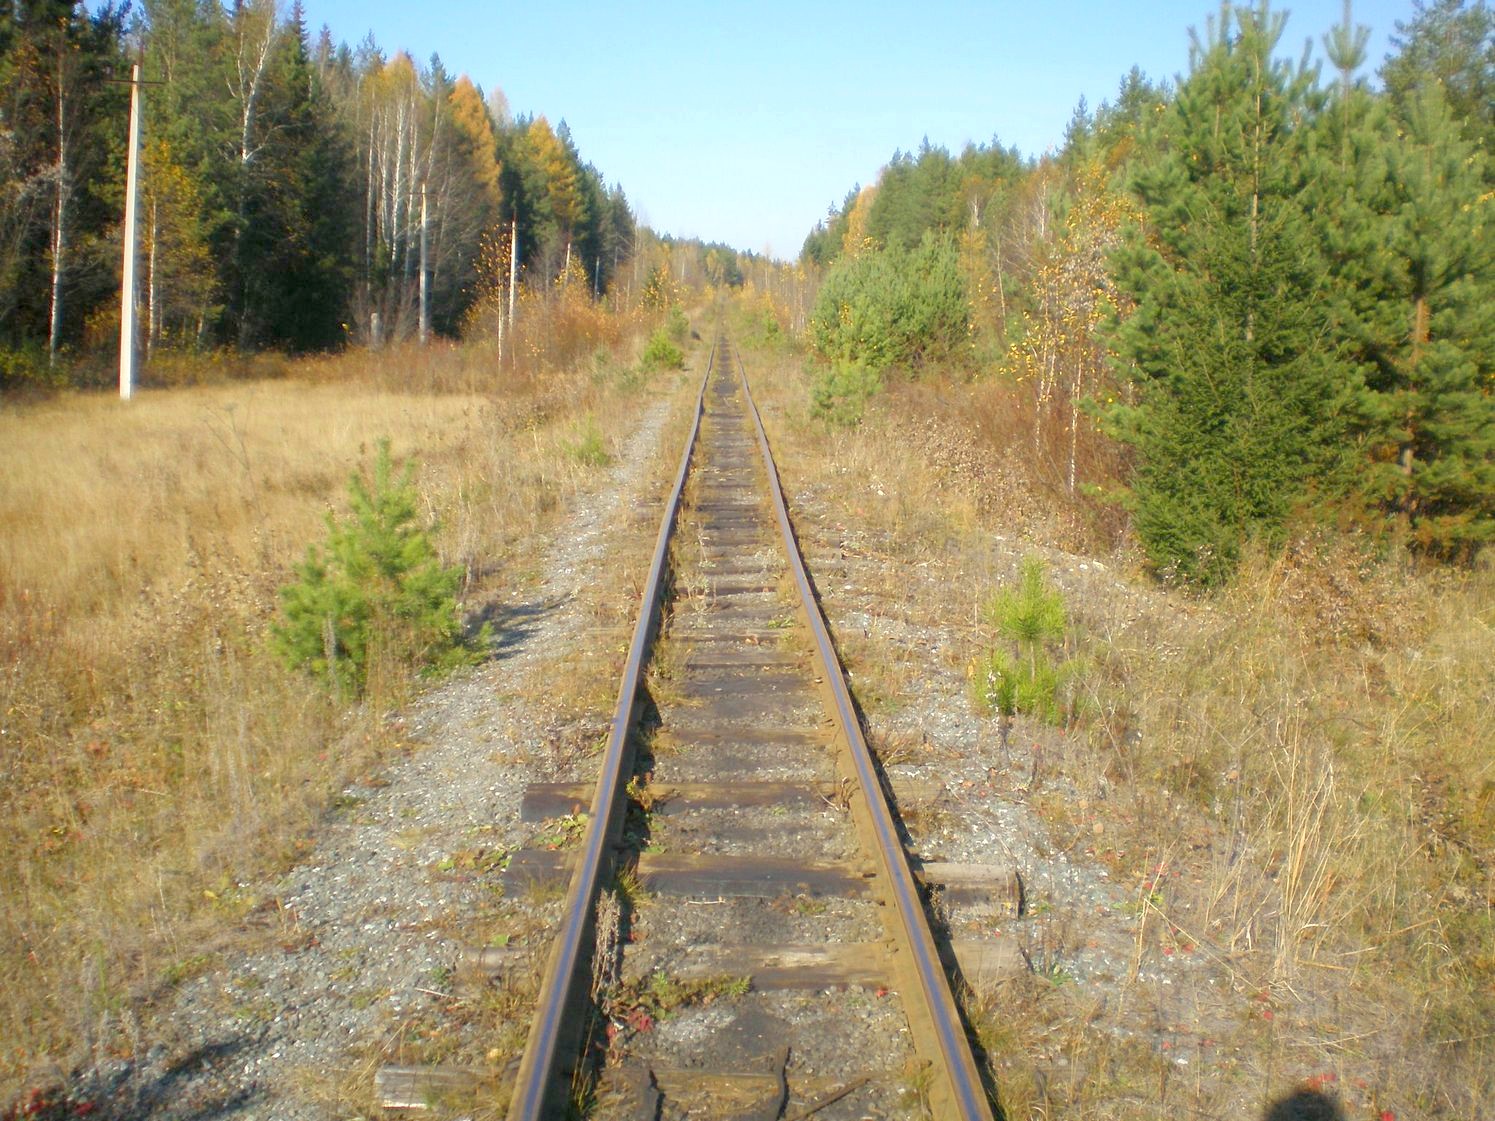 Висимо-Уткинская узкоколейная железная дорога  — фотографии, сделанные в 2007 году (часть 28)